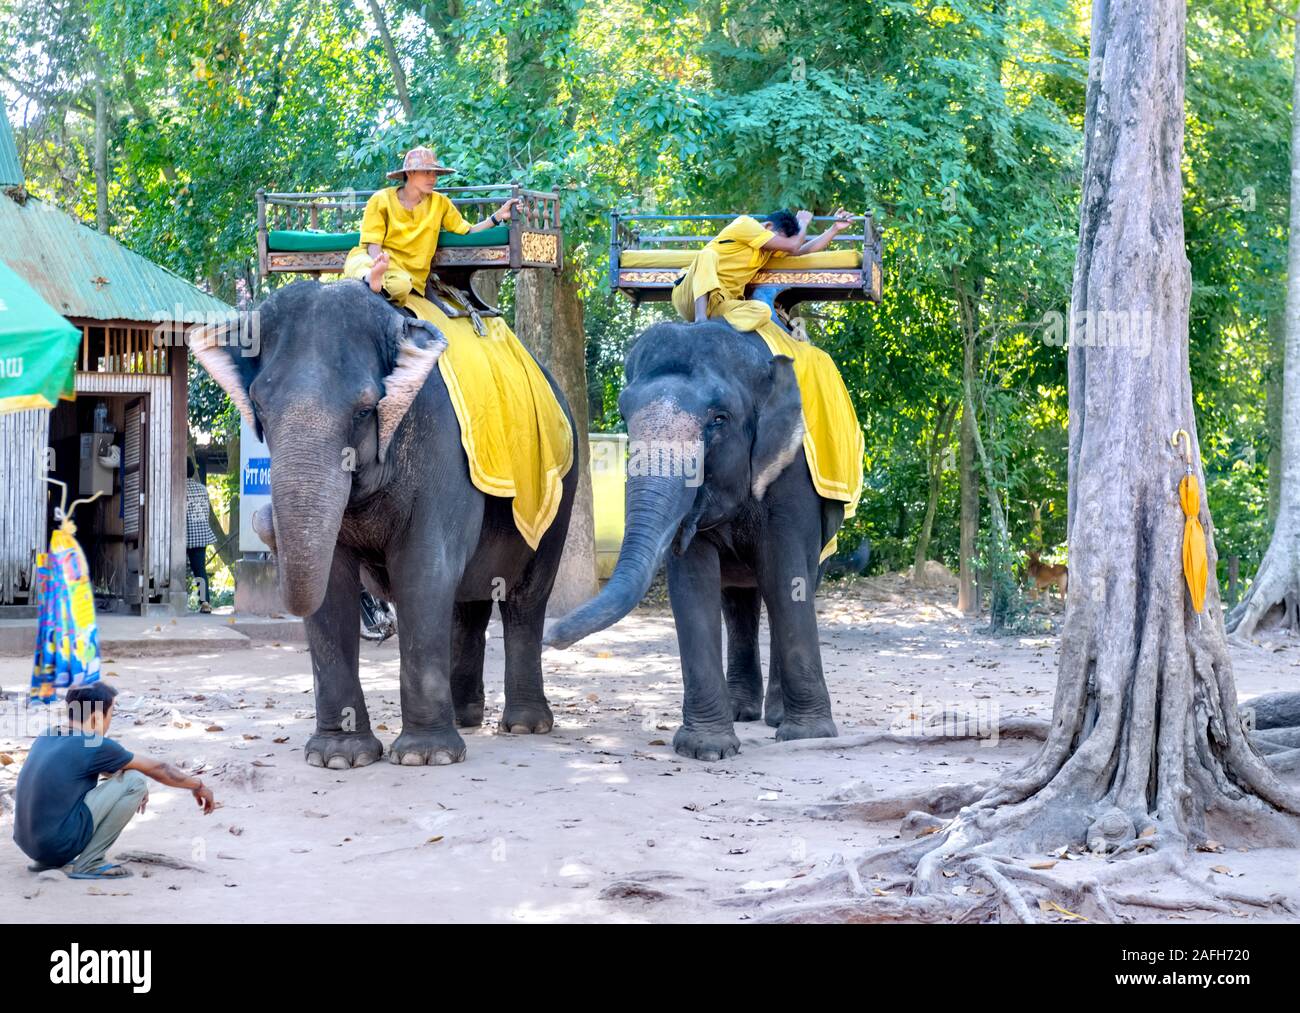 Mahouts riding asian elephants Angkor Thom Siem Reap Cambodia Stock Photo